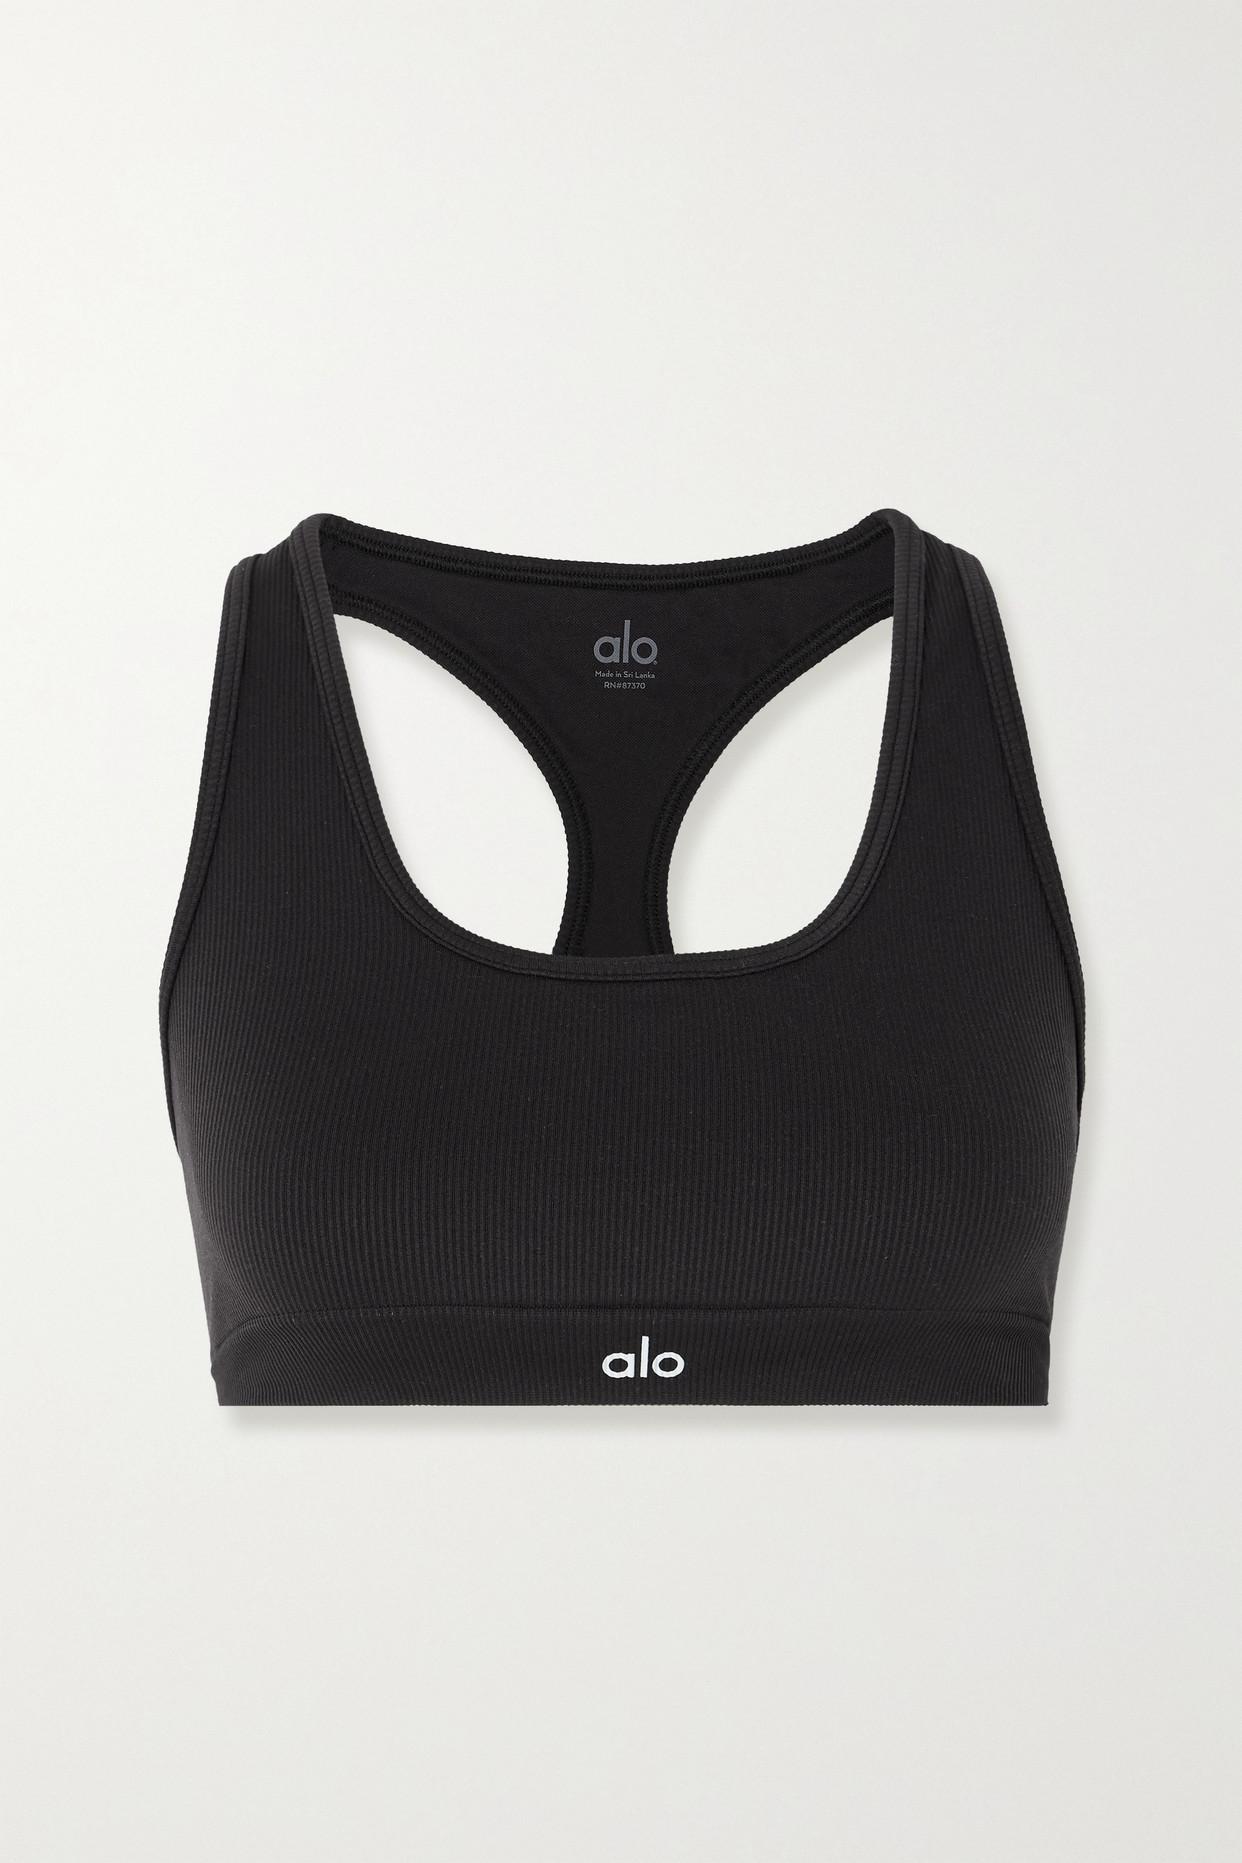 Alo Yoga Ribbed Stretch Sports Bra in Black